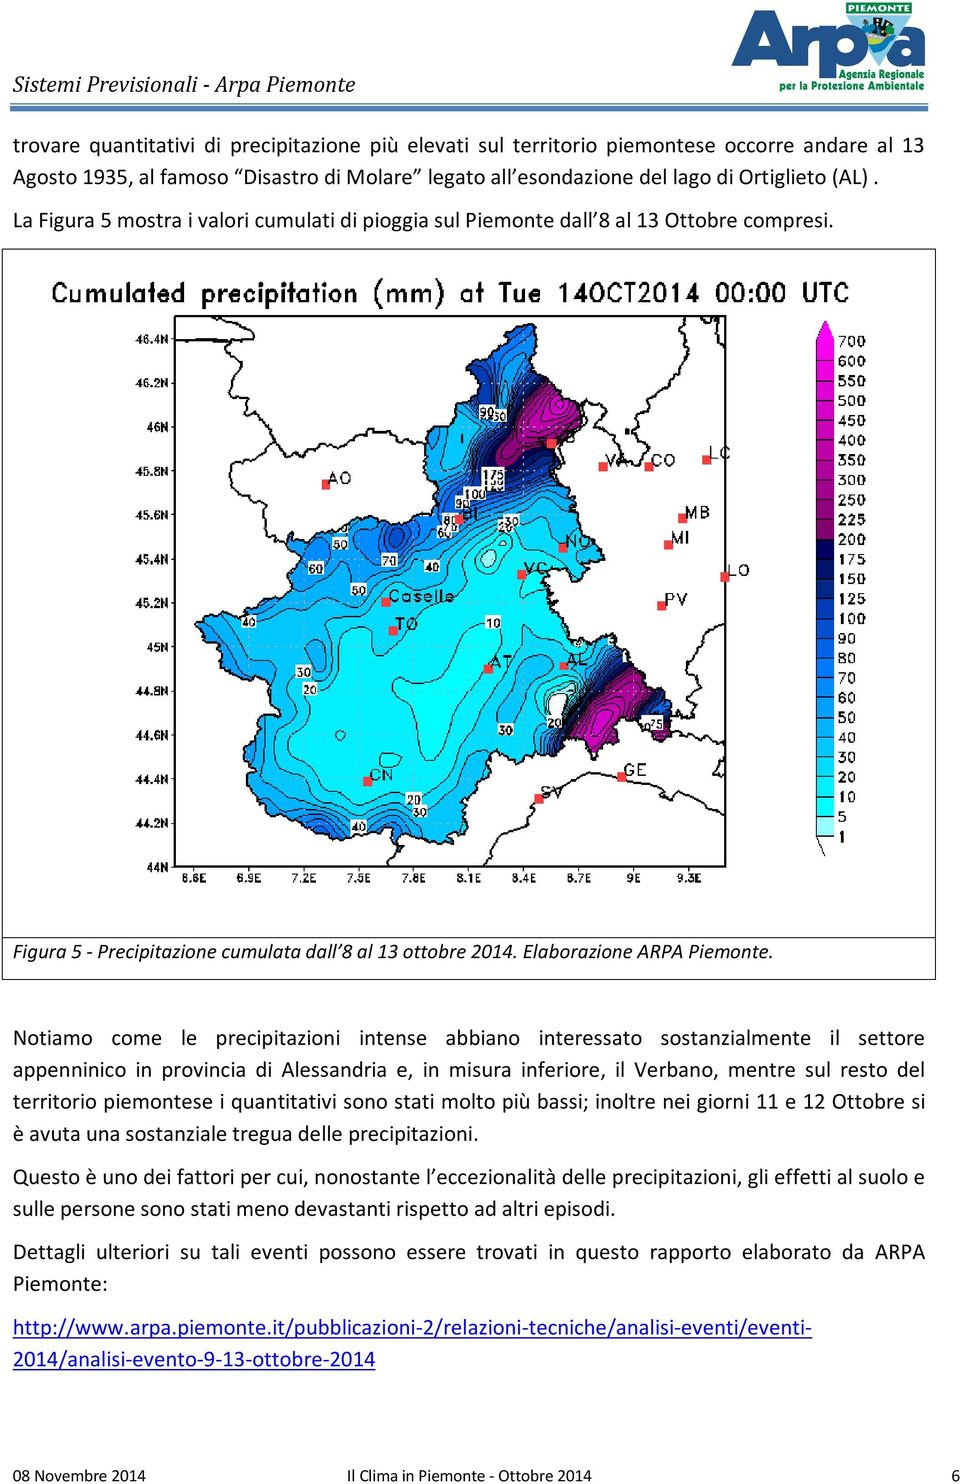 Notiamo come le precipitazioni intense abbiano interessato sostanzialmente il settore appenninico in provincia di Alessandria e, in misura inferiore, il Verbano, mentre sul resto del territorio